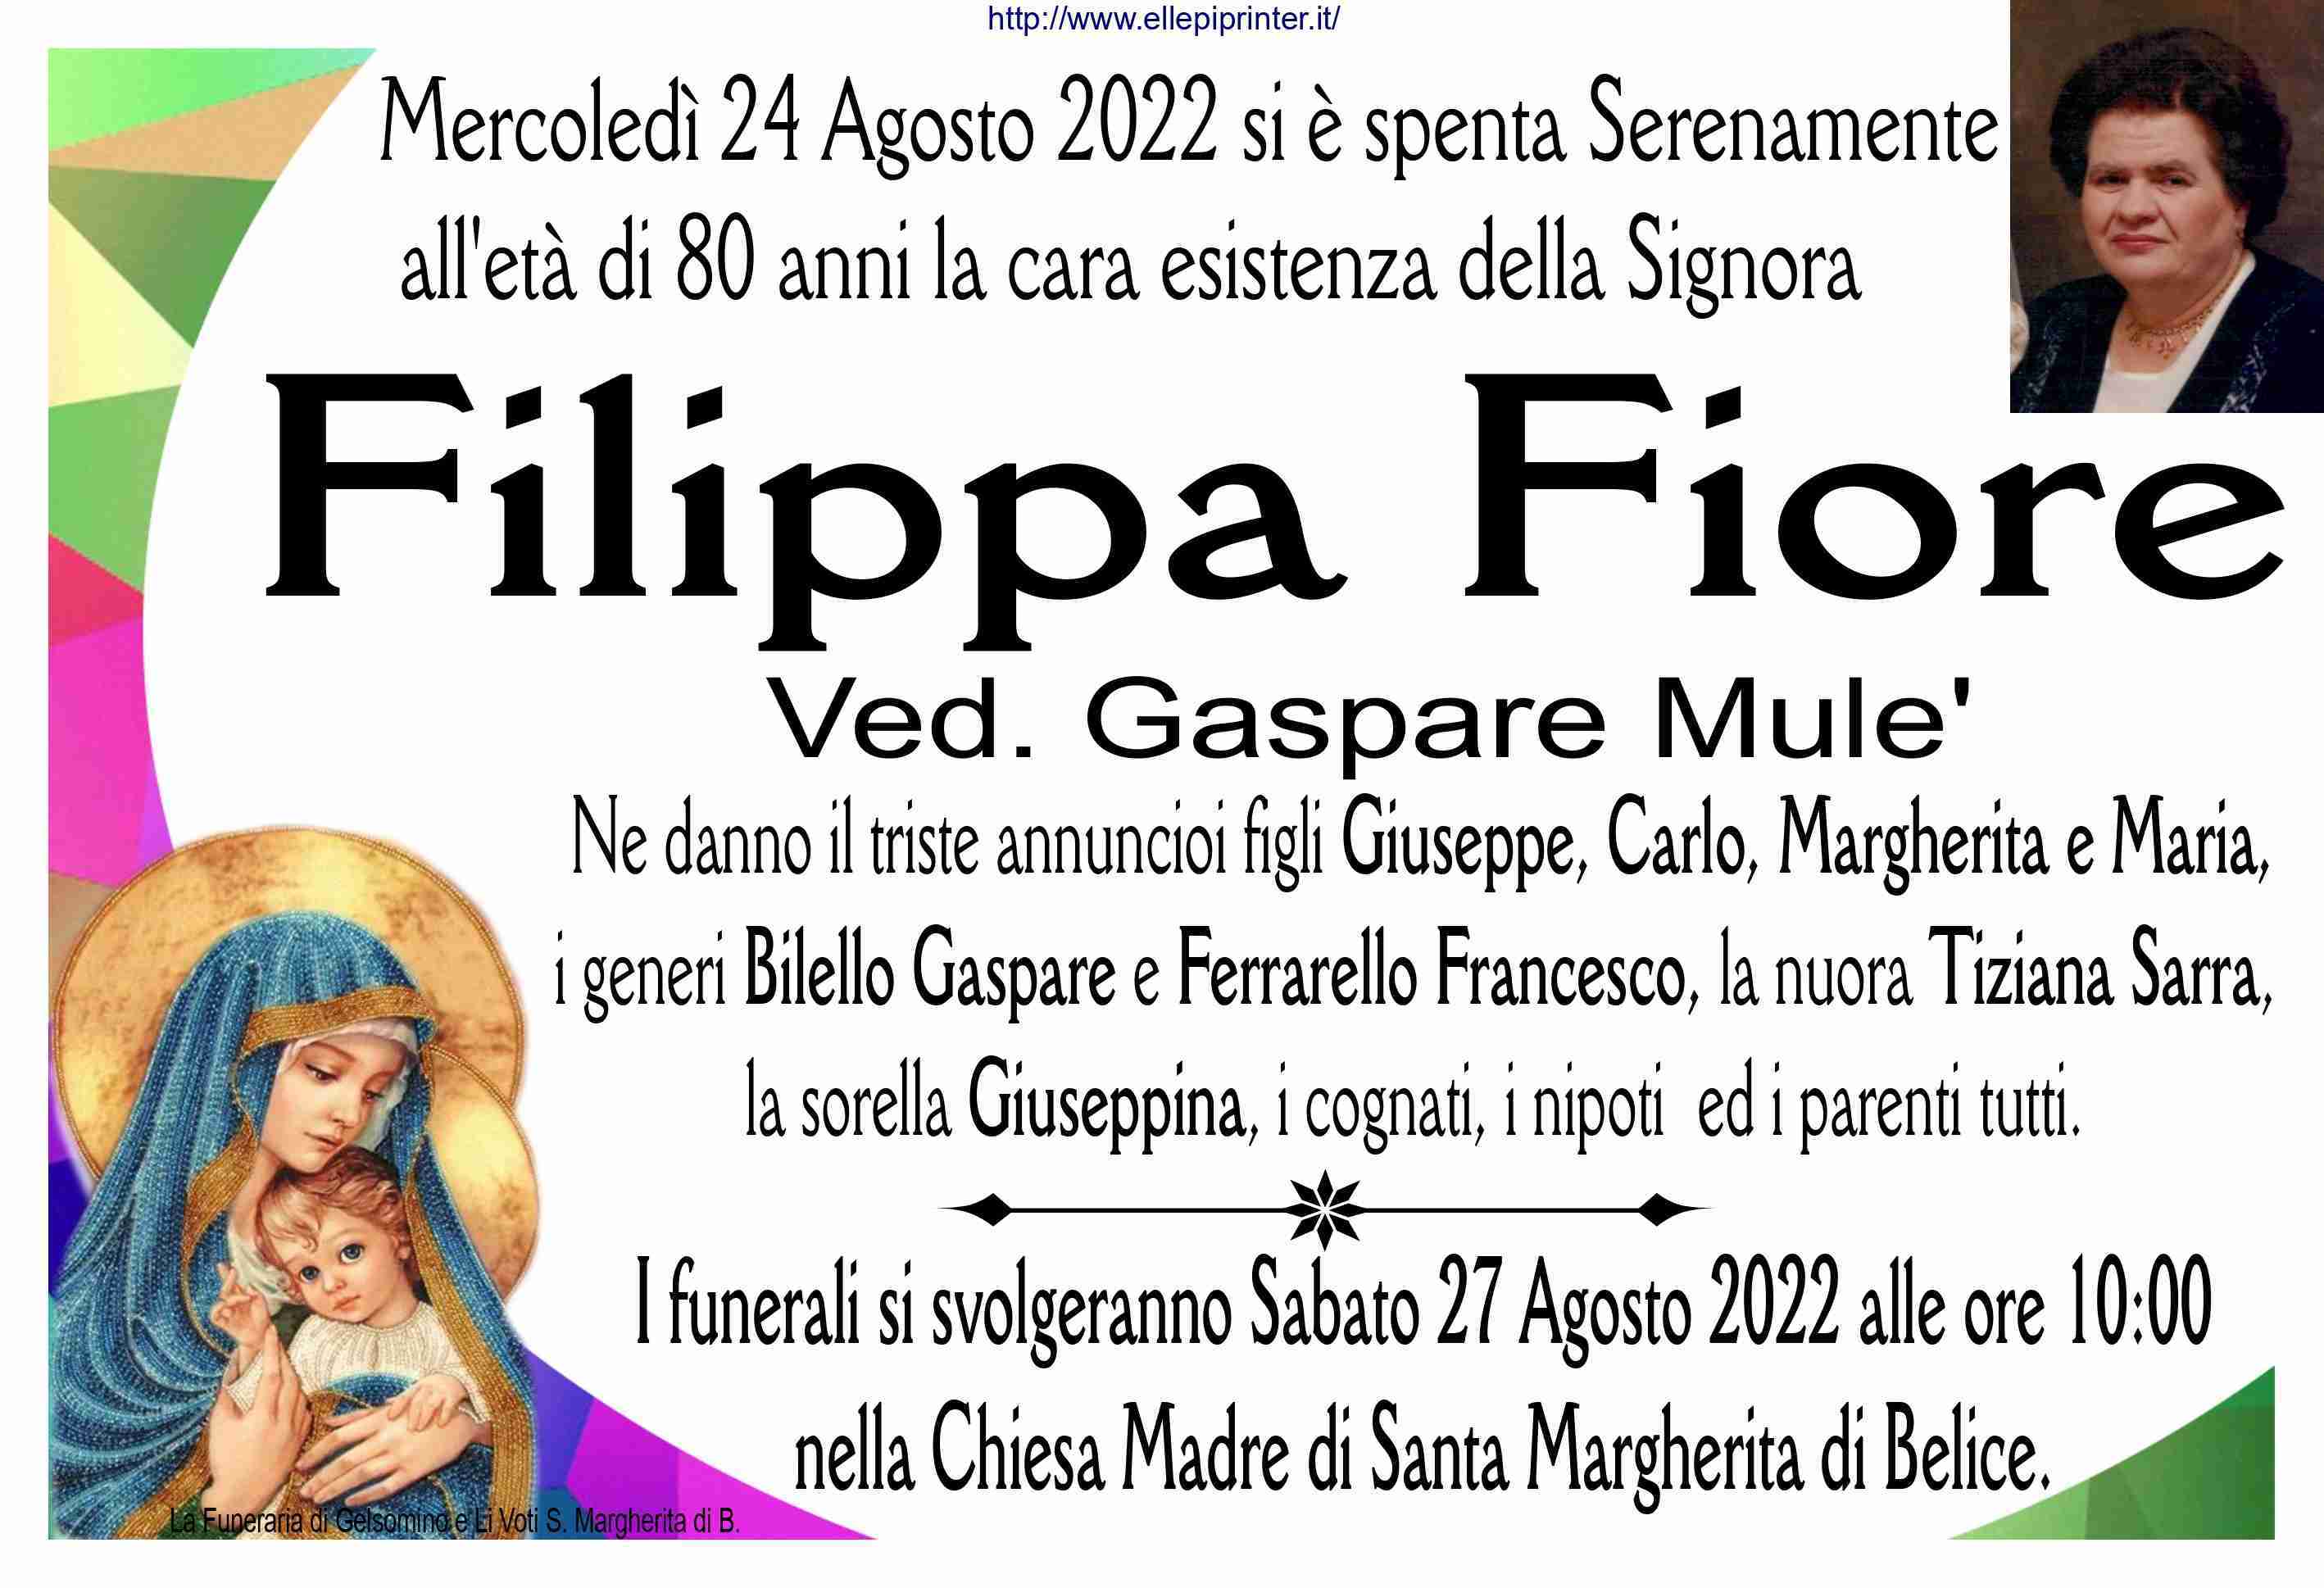 Filippa Fiore